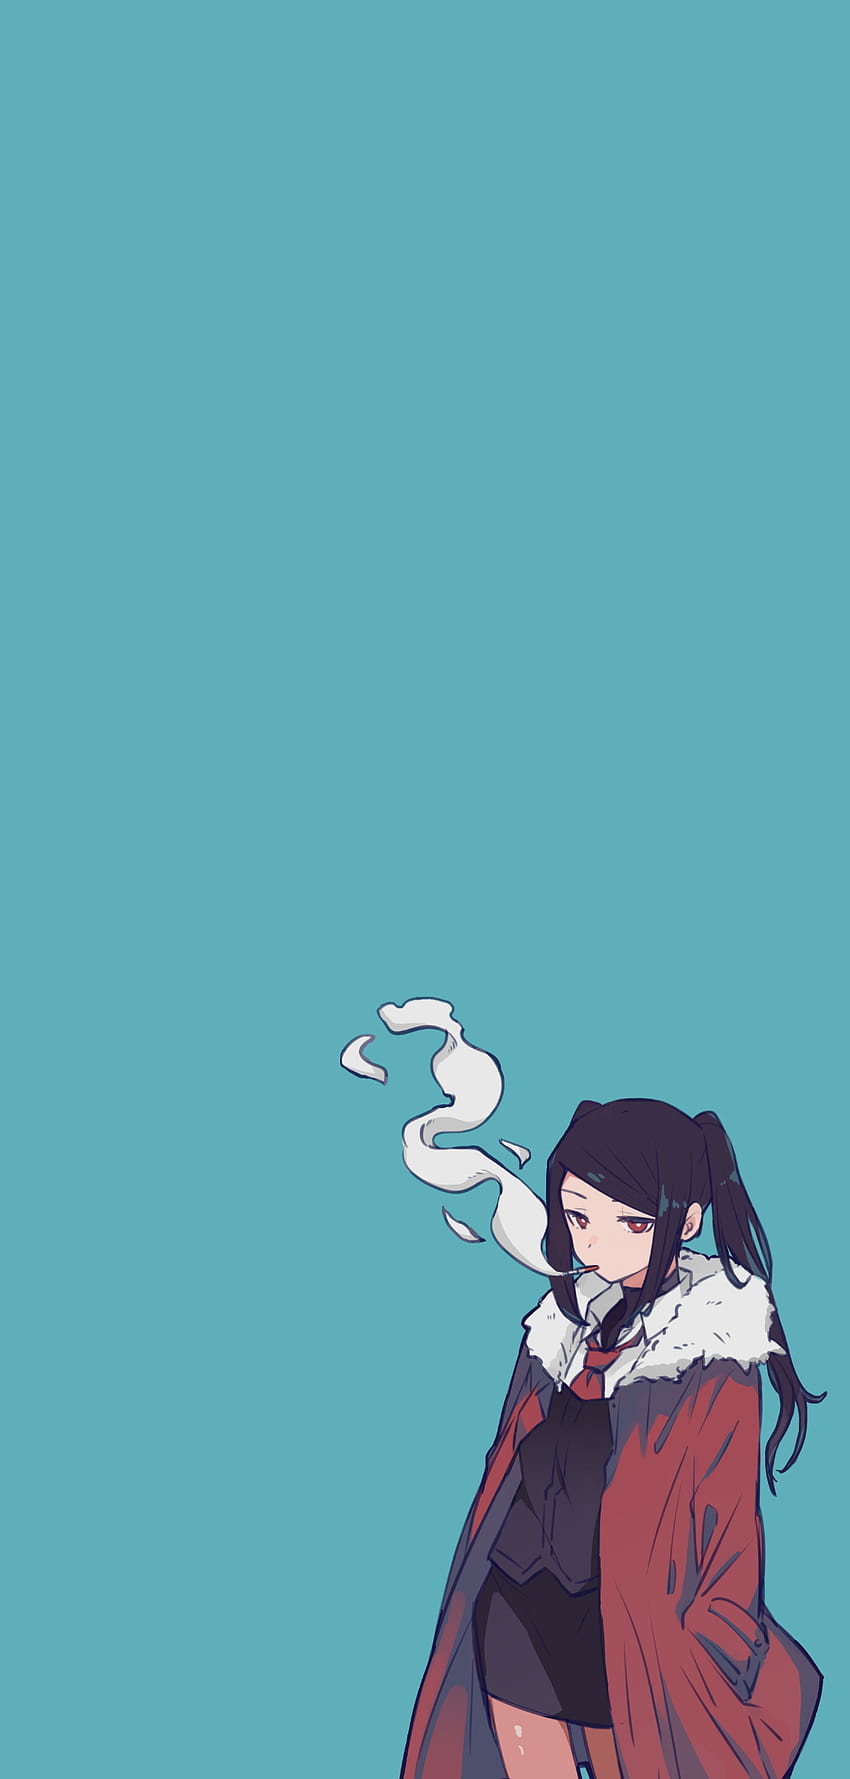 Einfache Hintergründe Va 11 Hall A Julianne Stingray Rauchen von Zigaretten Cyan Cyan-Hintergründe, Anime-Frauen rauchen HD-Handy-Hintergrundbild